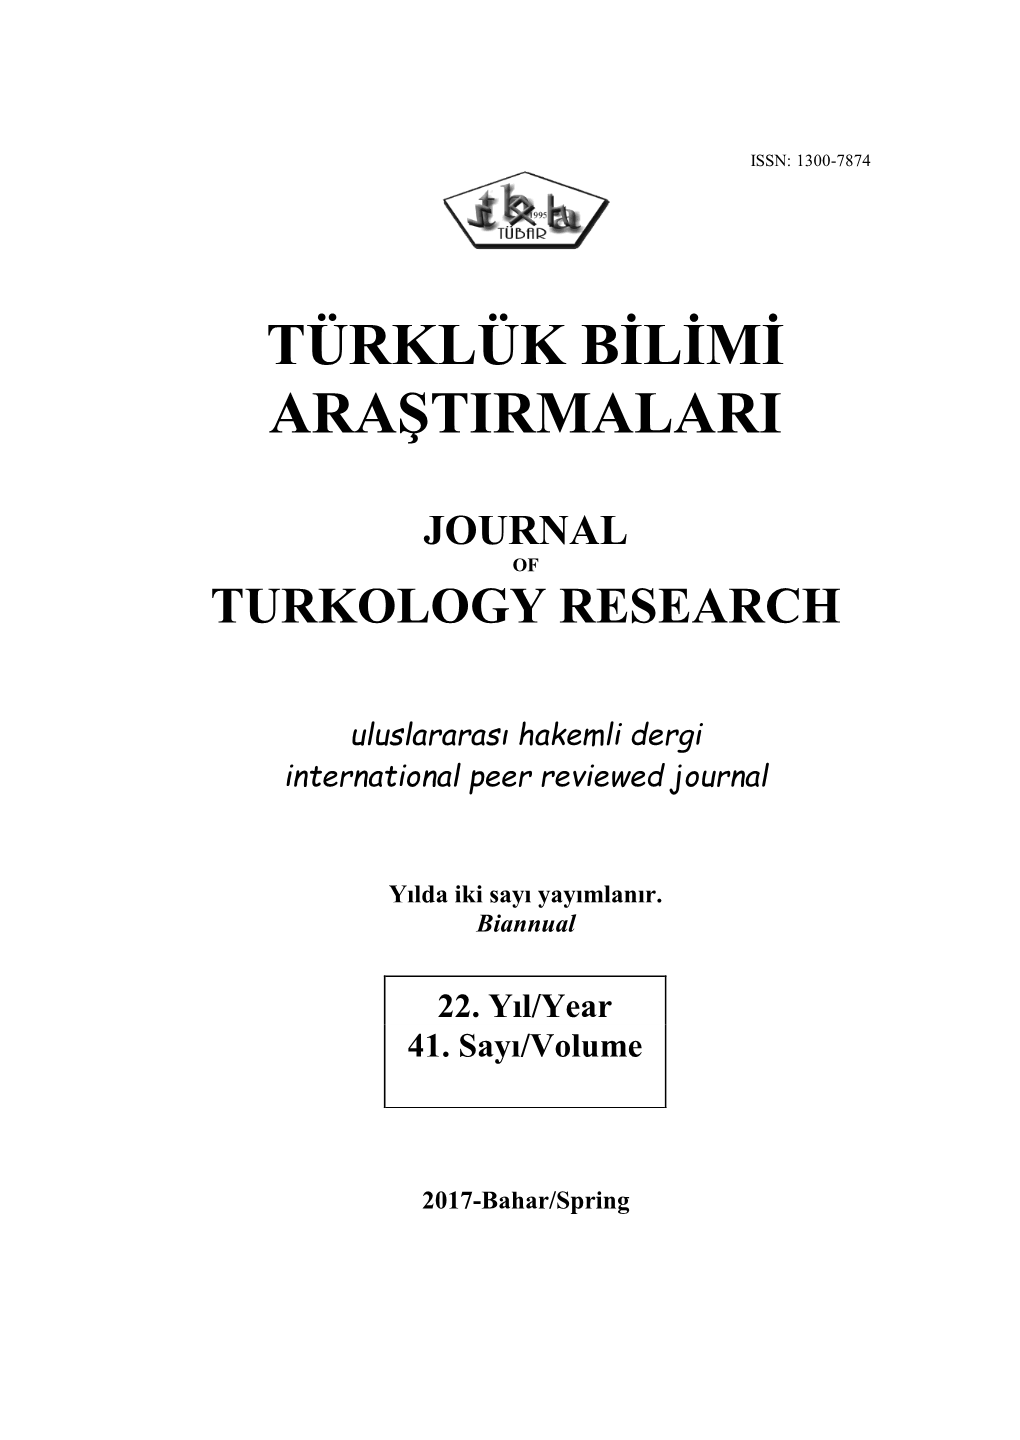 Türklük Bilimi Araştirmalari